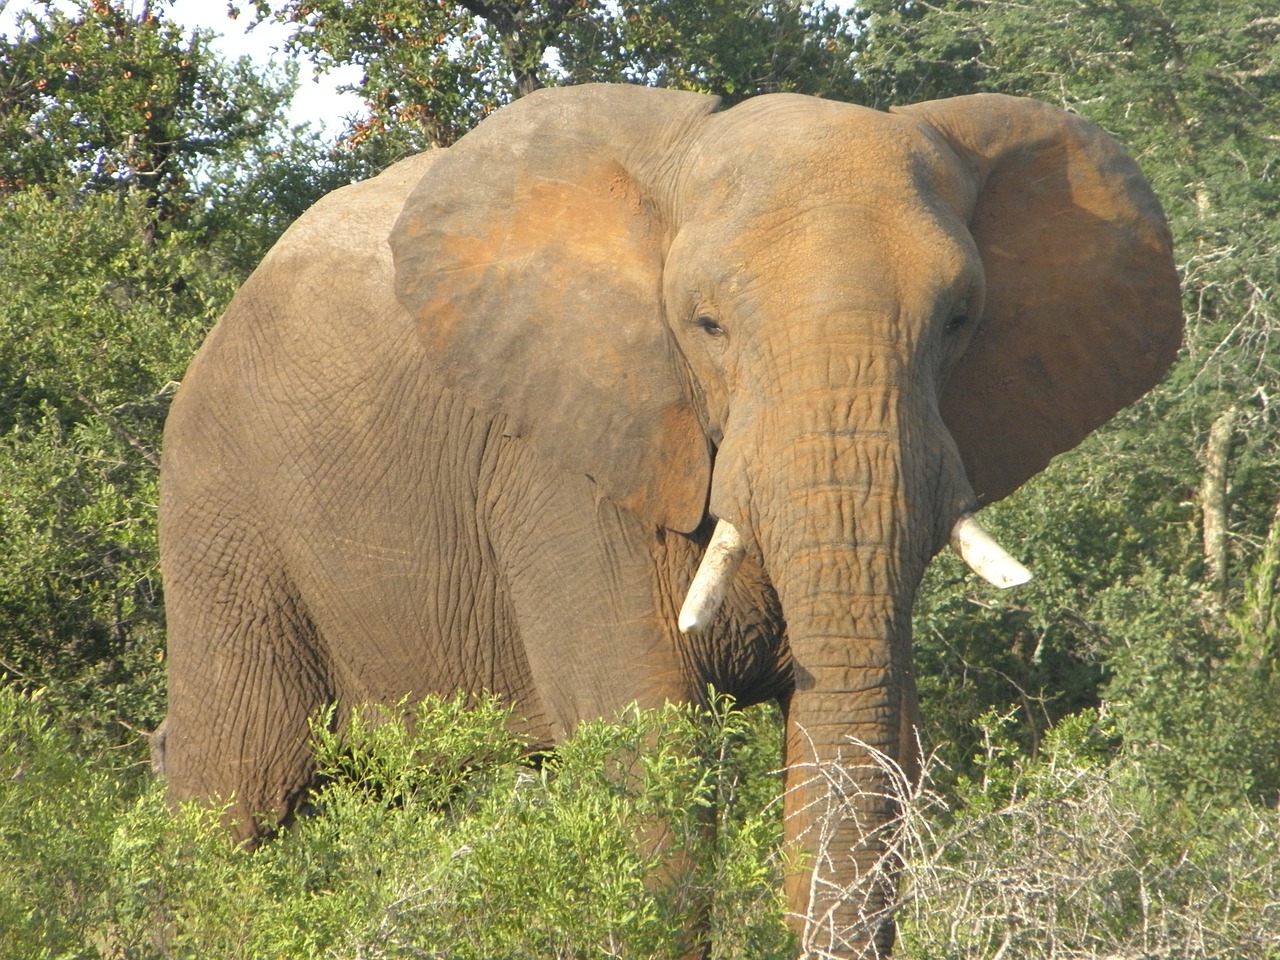 elephant africa wildlife free photo